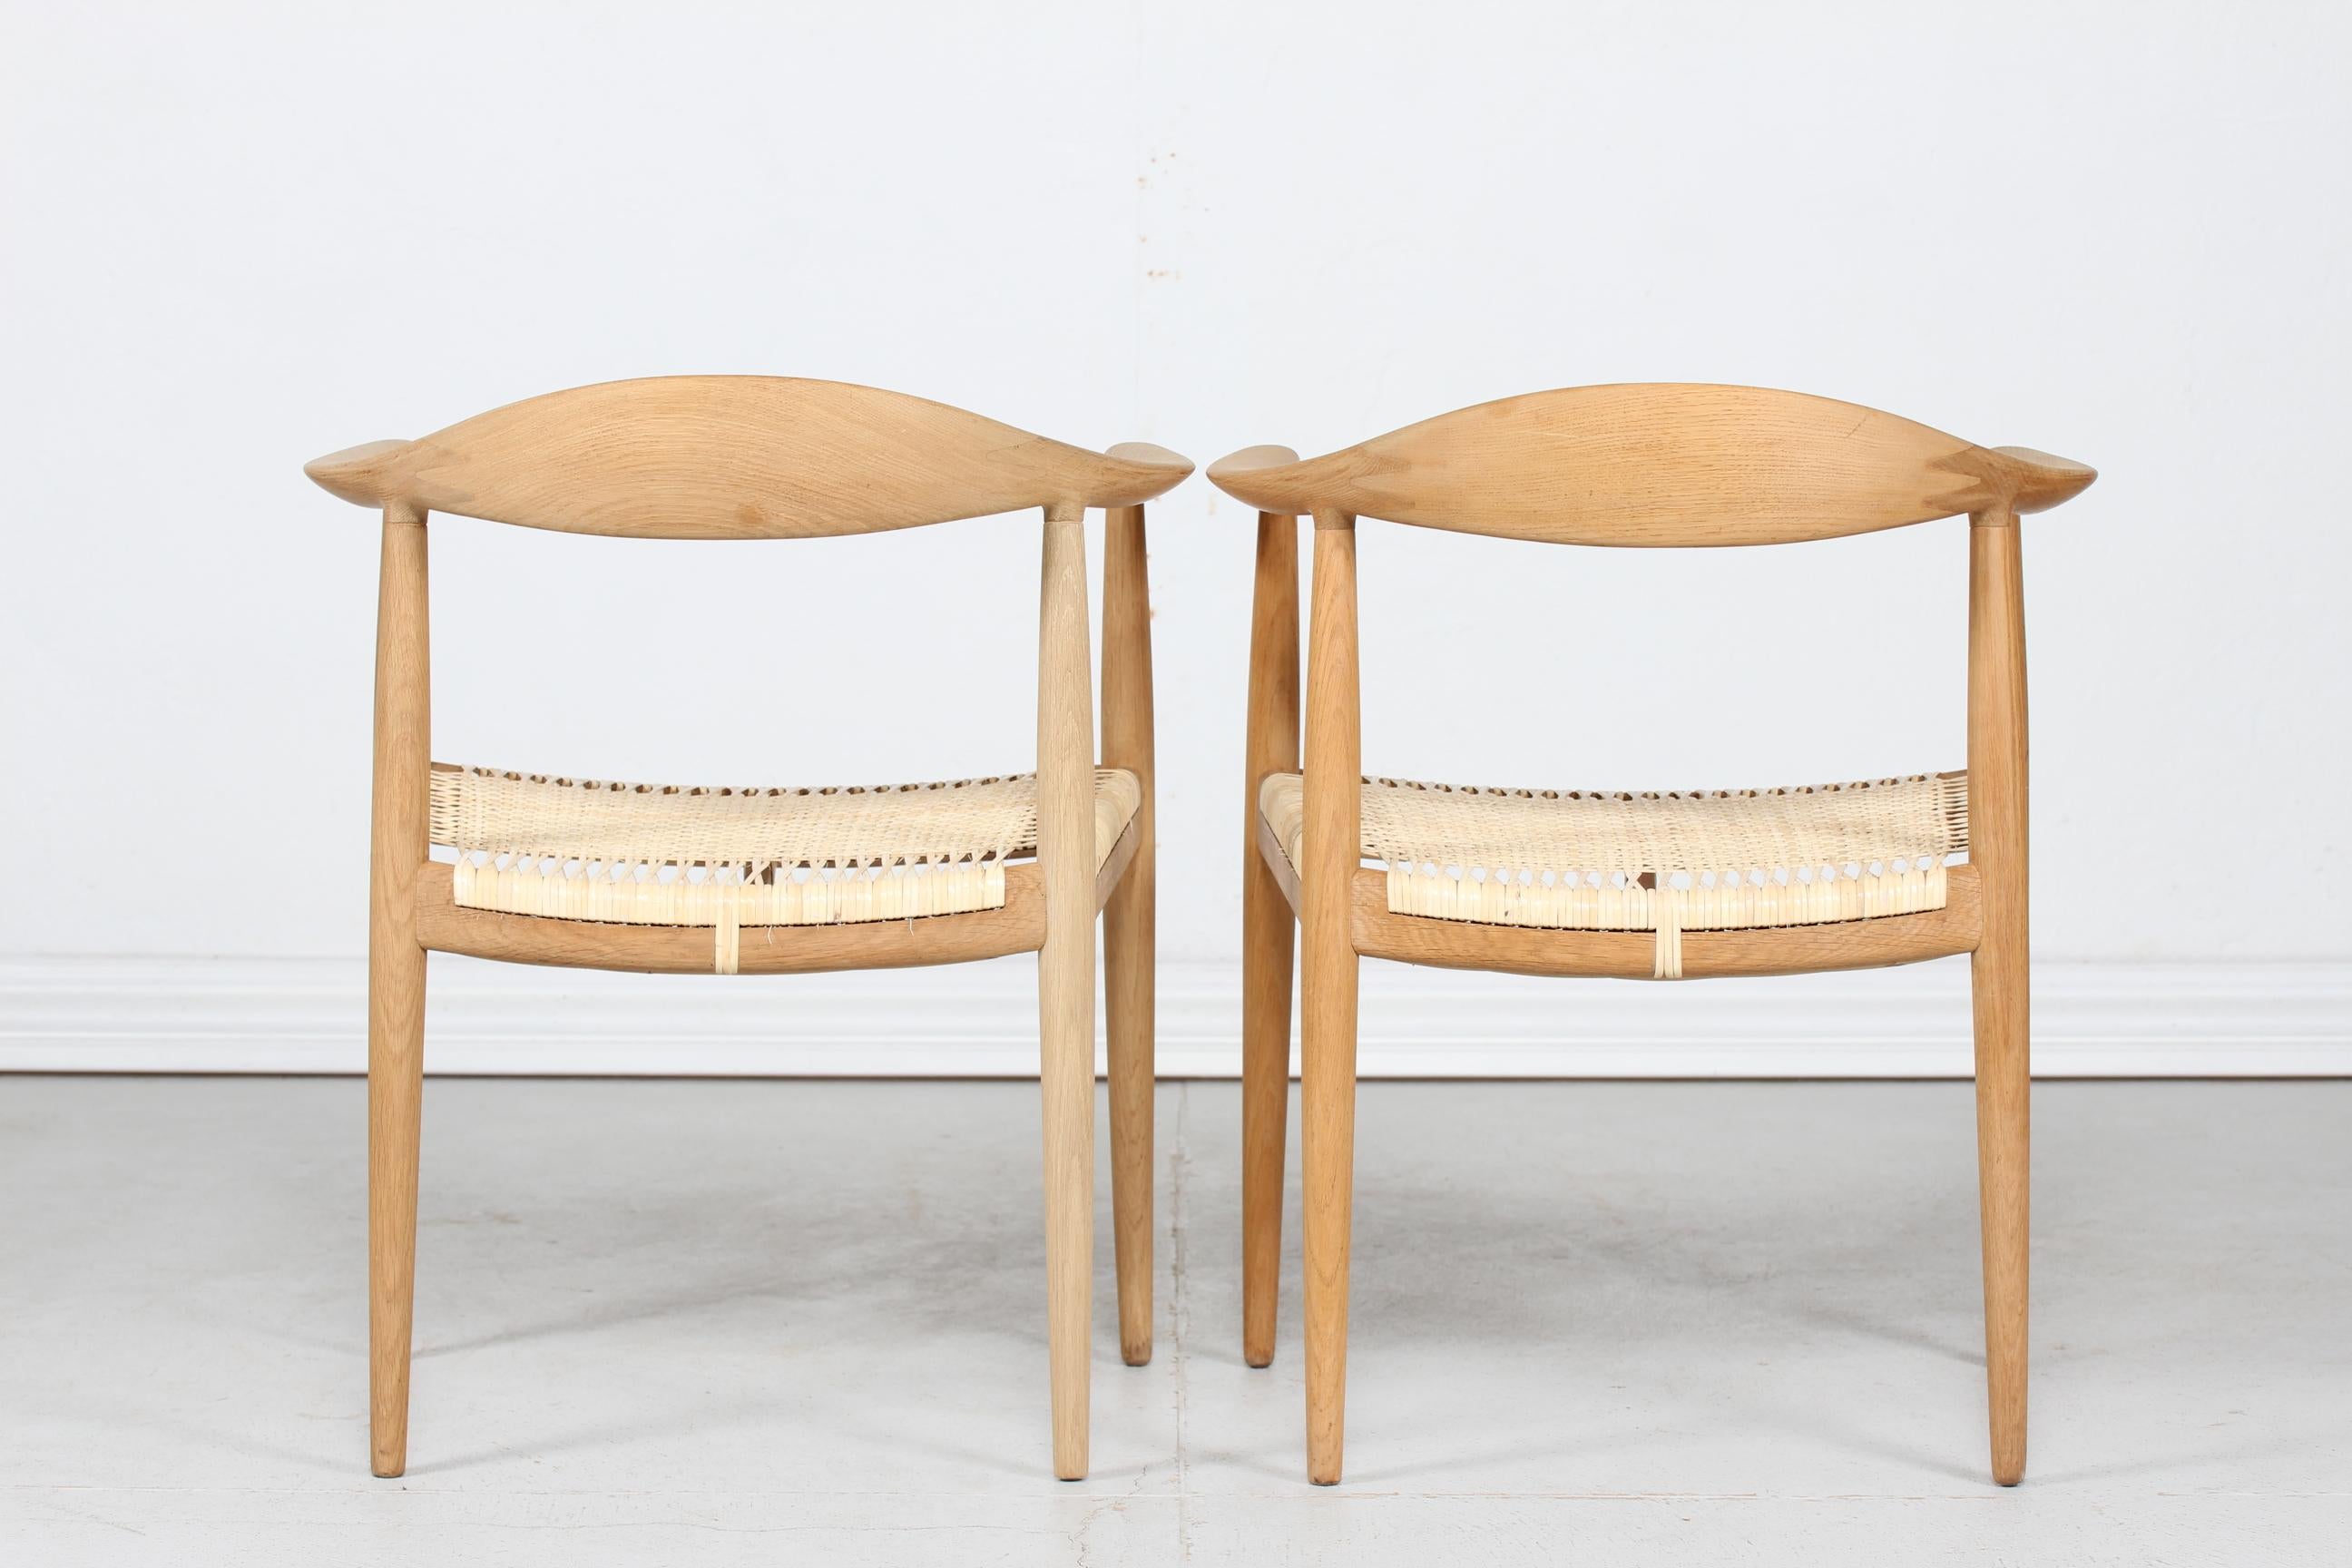 Chêne Paire de chaises de Hans J Wegner 503 en chêne et en rotin fabriquées par Johannes Hansen:: années 1960